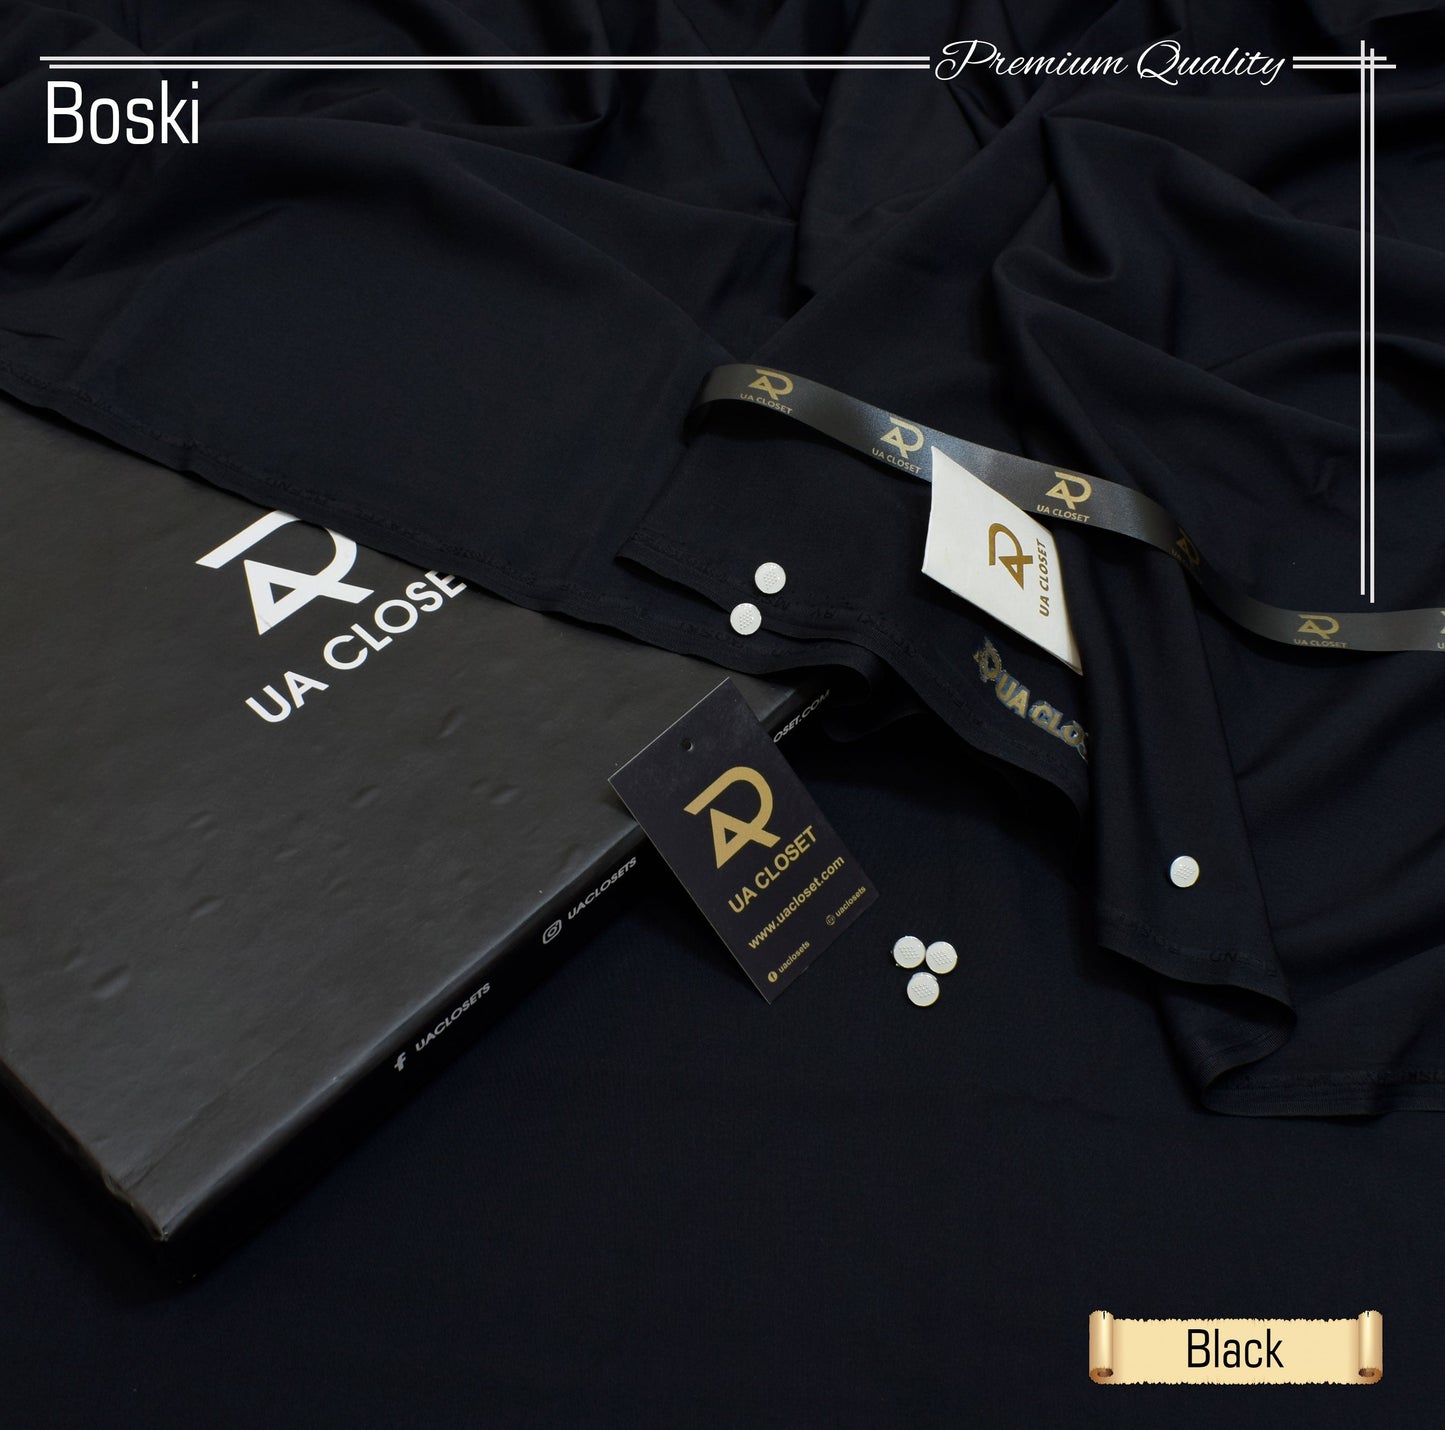 Glamorous Boski Suit Gift Box Packing M-002